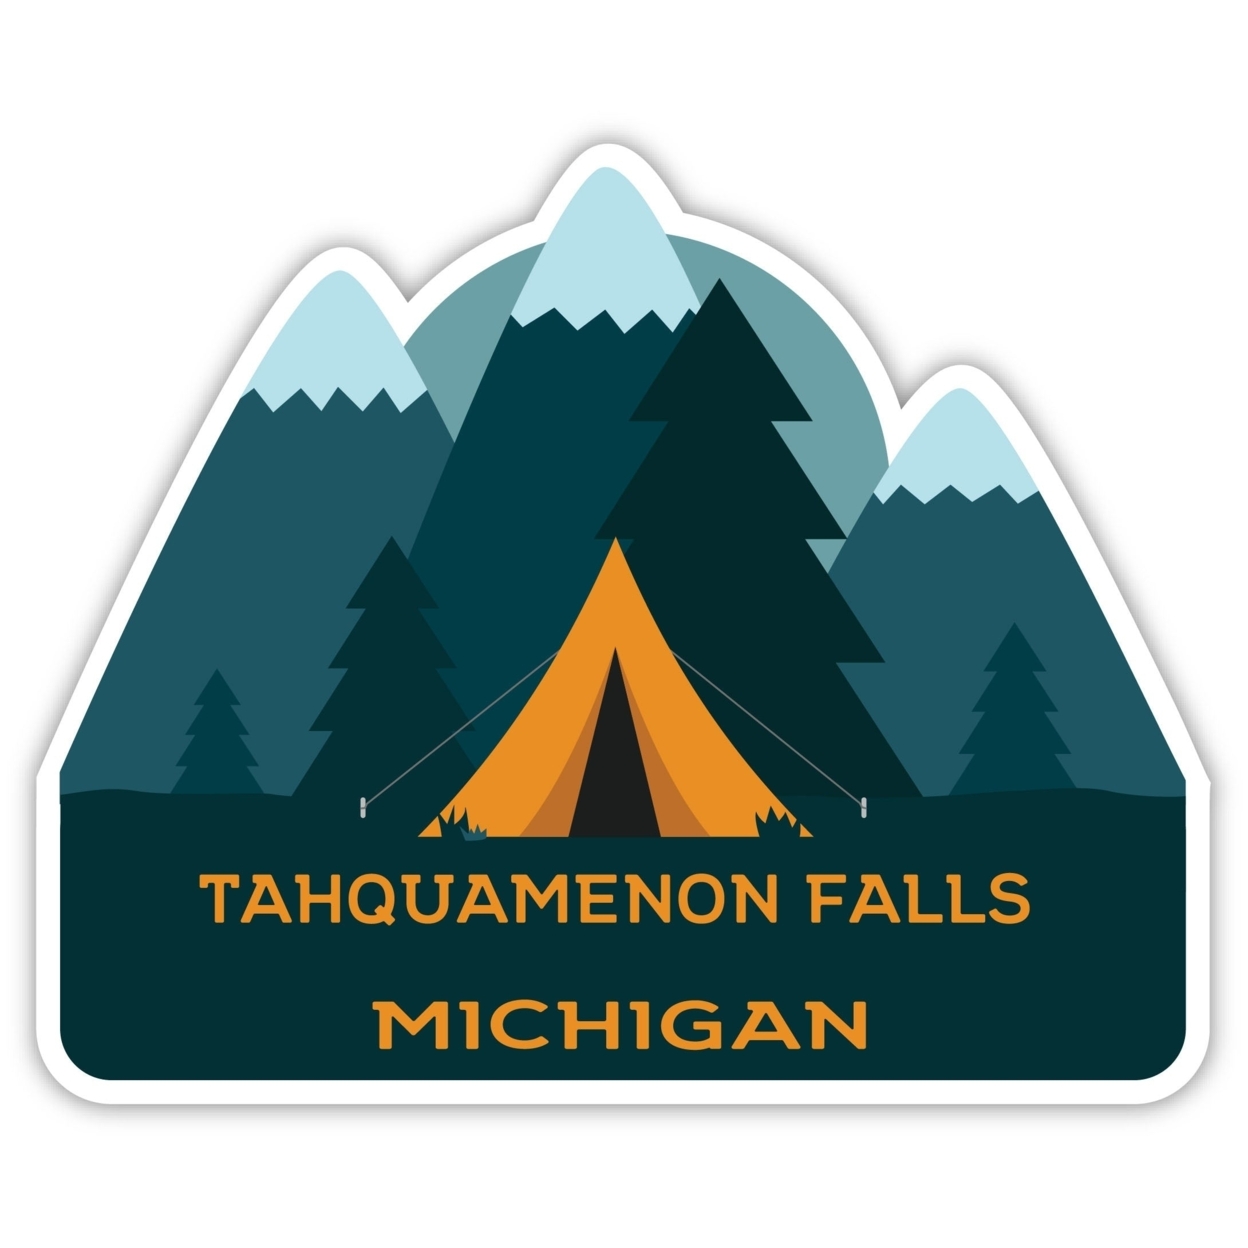 Tahquamenon Falls Michigan Souvenir Decorative Stickers (Choose Theme And Size) - Single Unit, 4-Inch, Tent